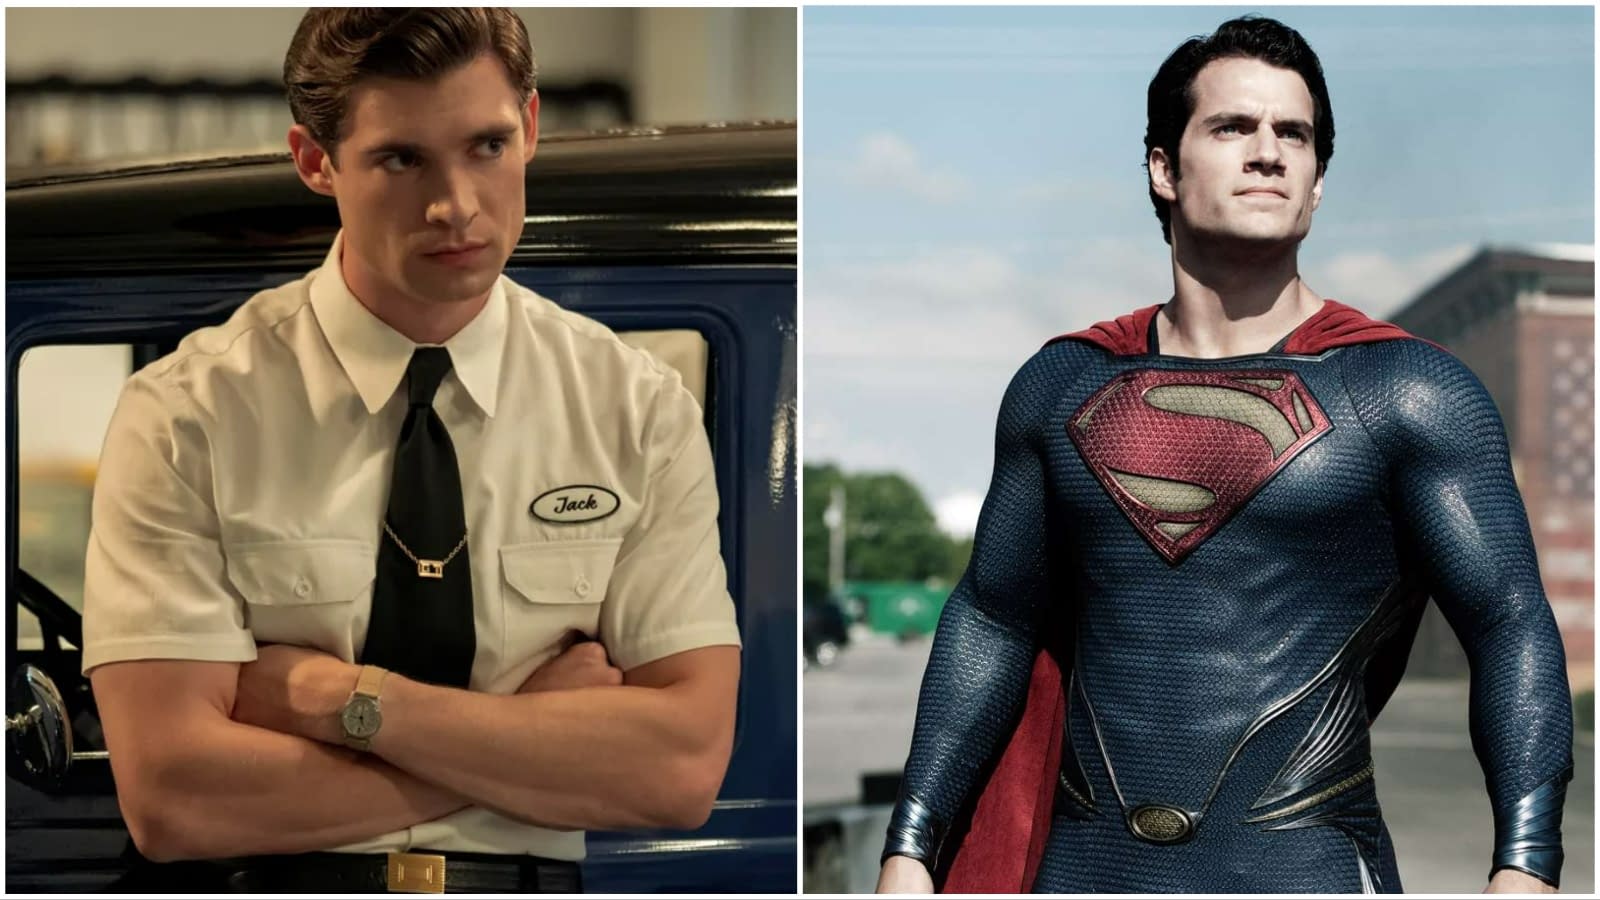 Henry Cavill responde sobre novo filme do Superman